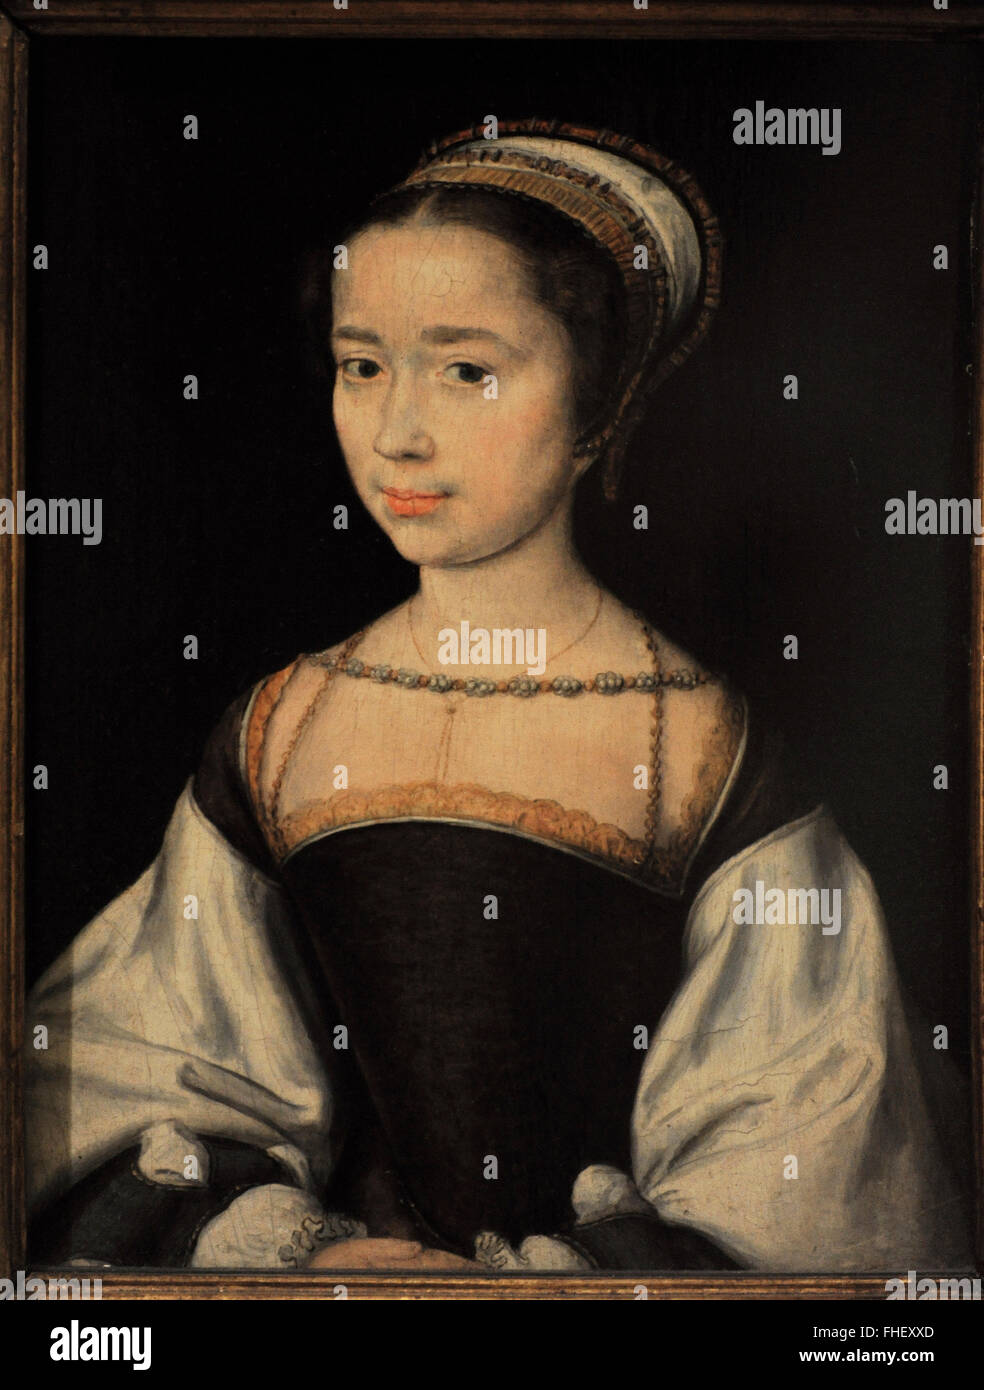 Corneille de Lyon (1500/1510-1575). Französischer Maler. Porträt einer Frau, Mitte 1530er Jahren. Die Eremitage. Sankt Petersburg. Russland. Stockfoto